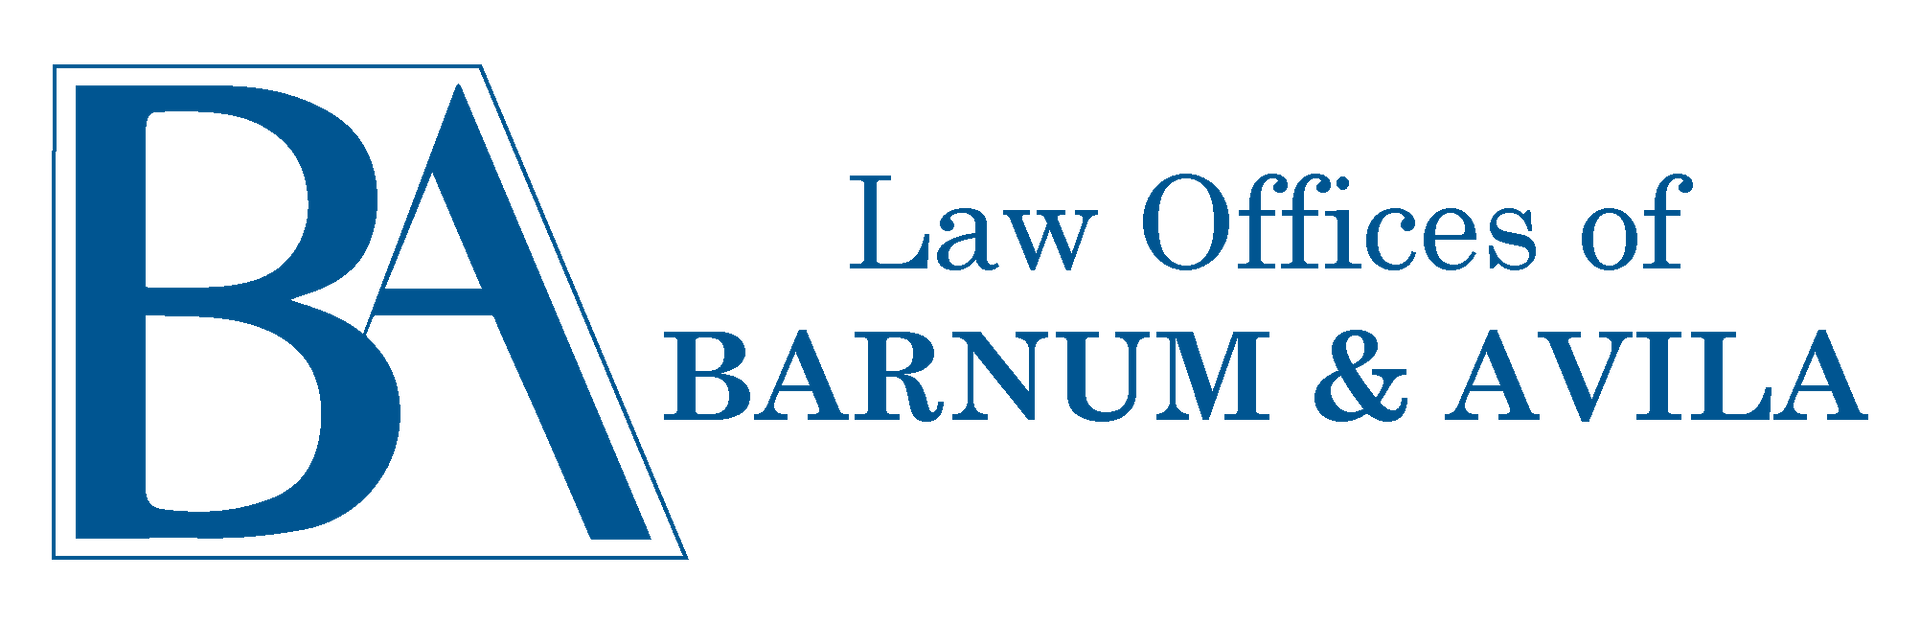 Law Offices of Barnum & Avila